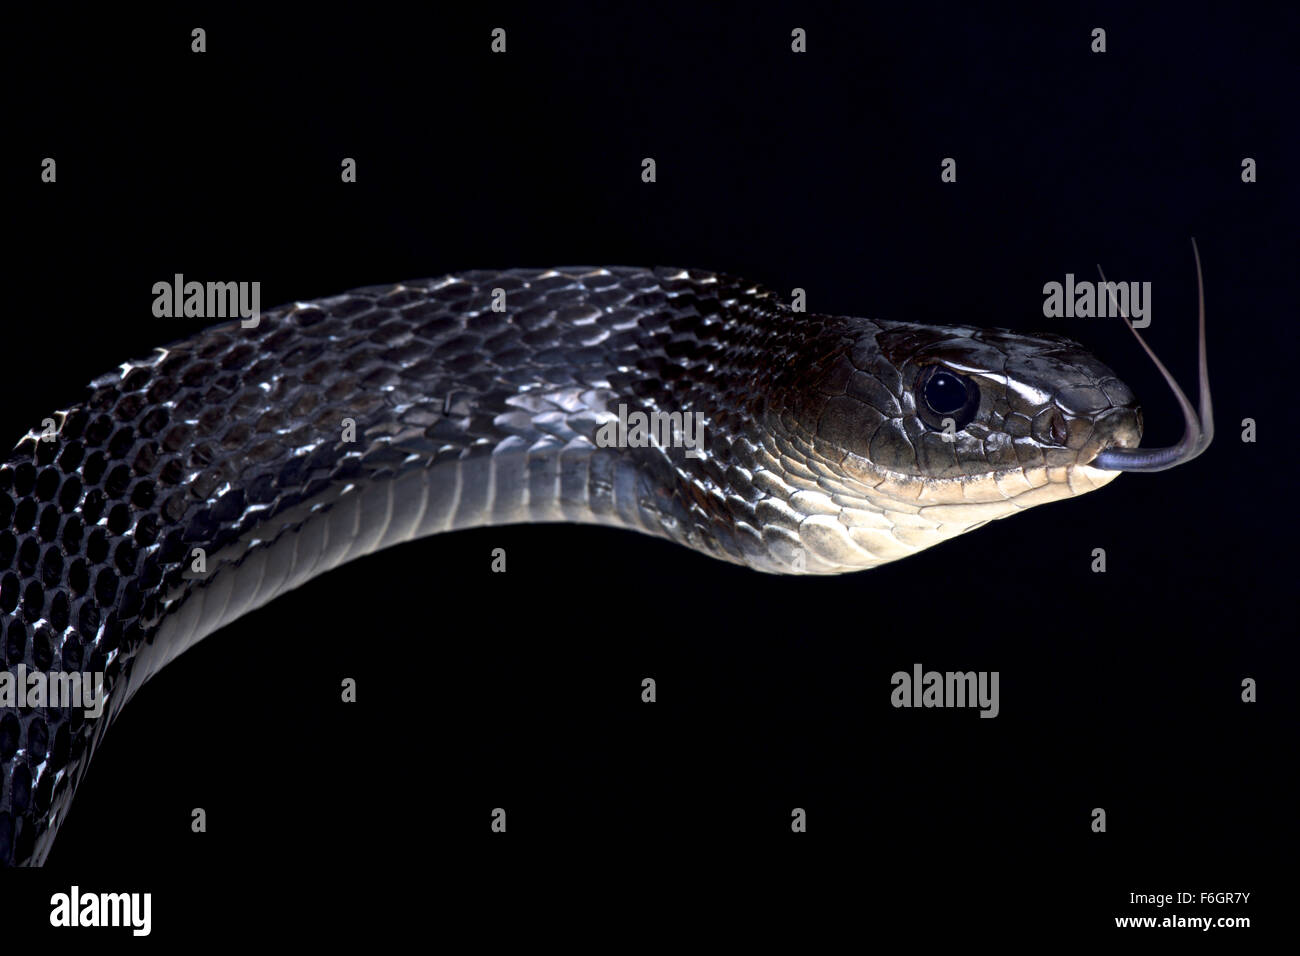 Keeled rat snake (Ptas carinatus) Stock Photo